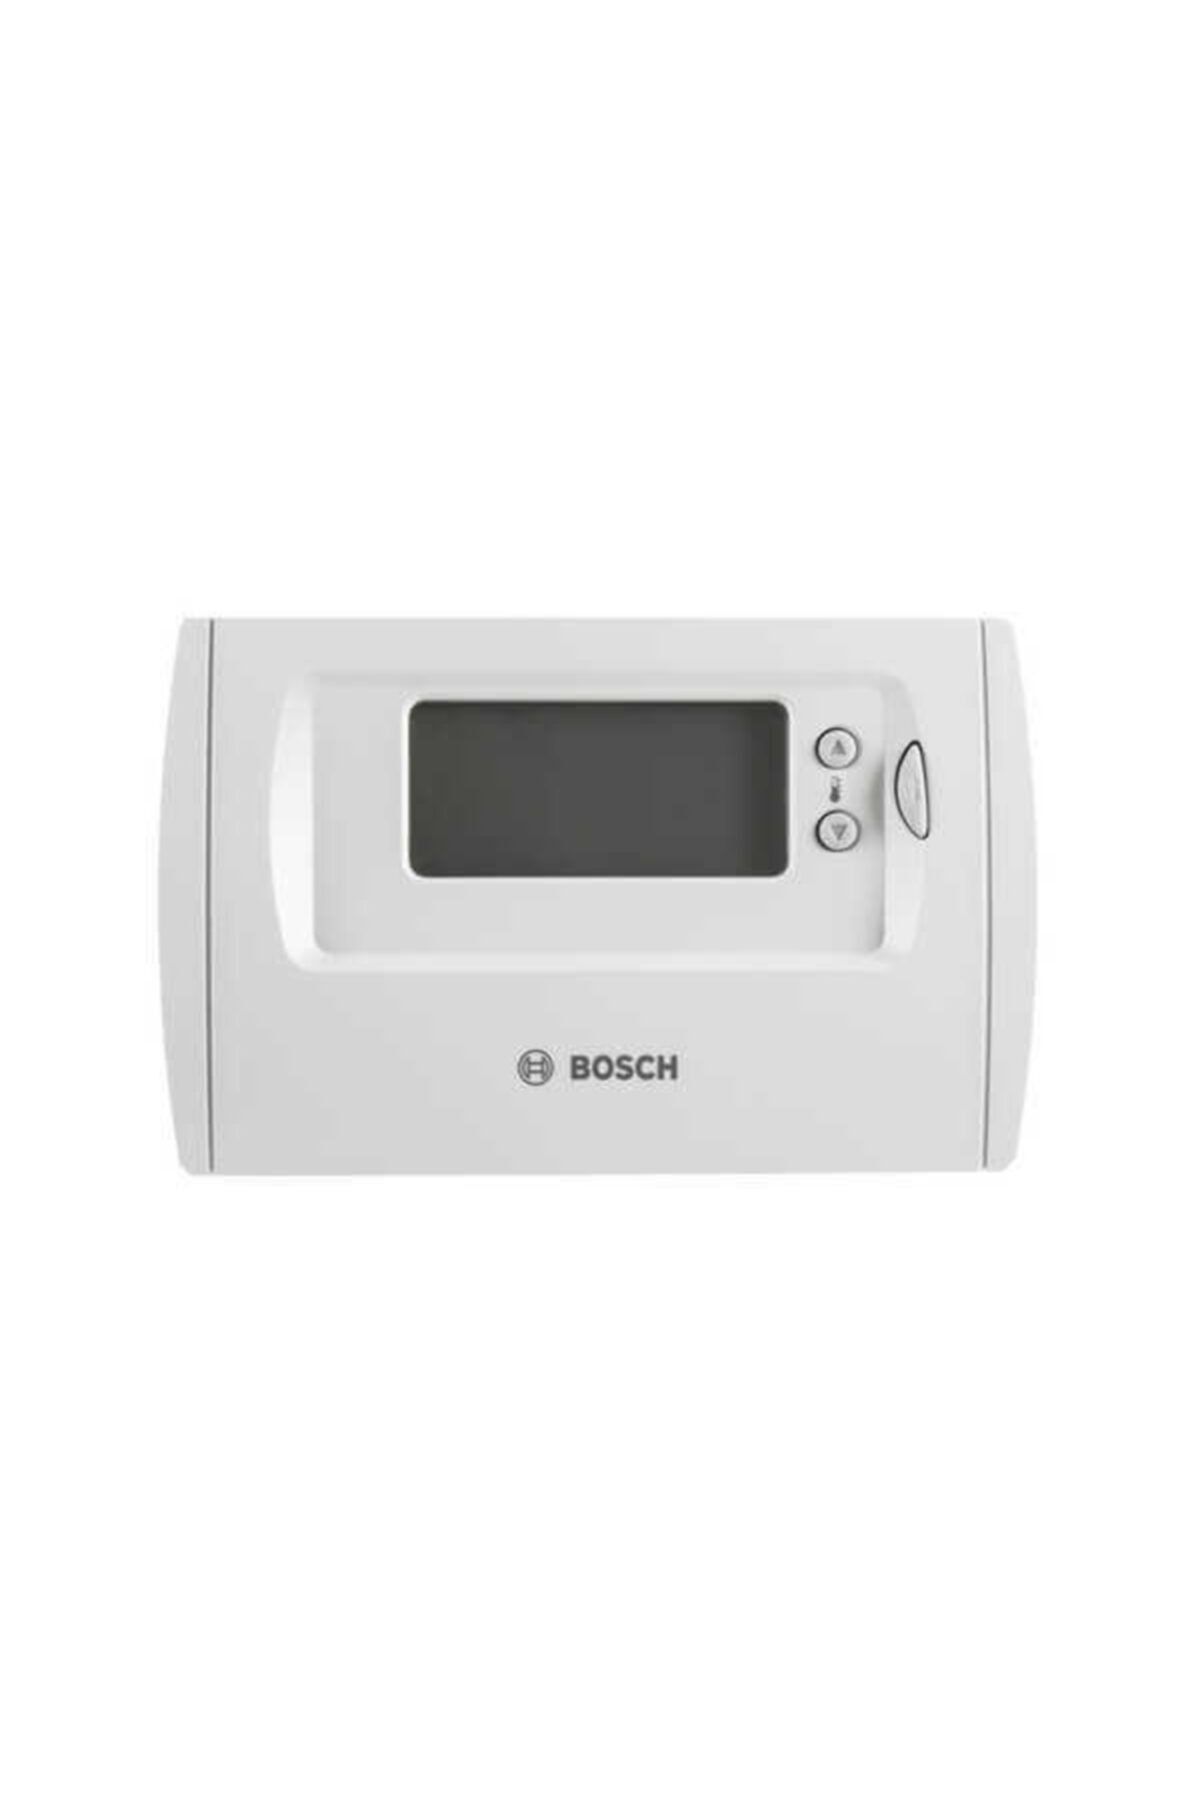 Bosch Tr 36 Rf Kablosuz Programlanabilir On/off Oda Termostatı